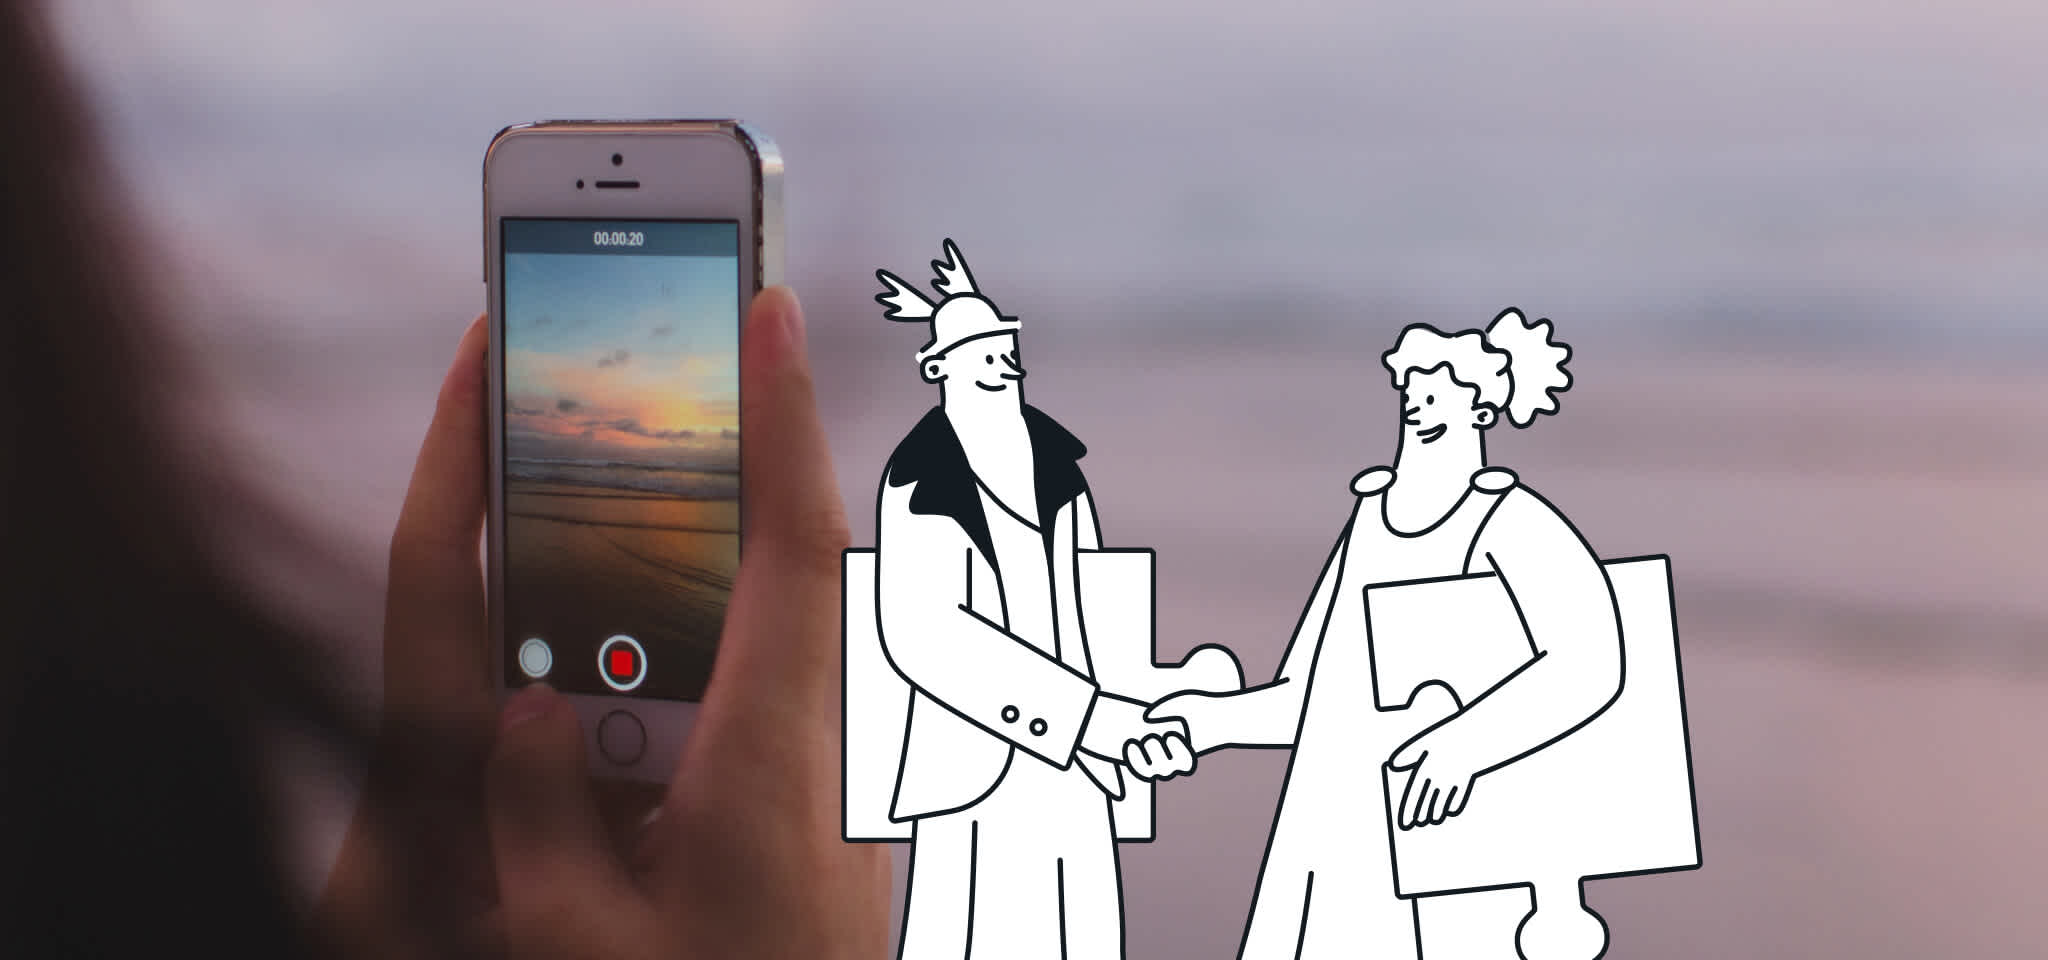 Hermes und eine Göttin einigen sich vor einem Mobiltelefon